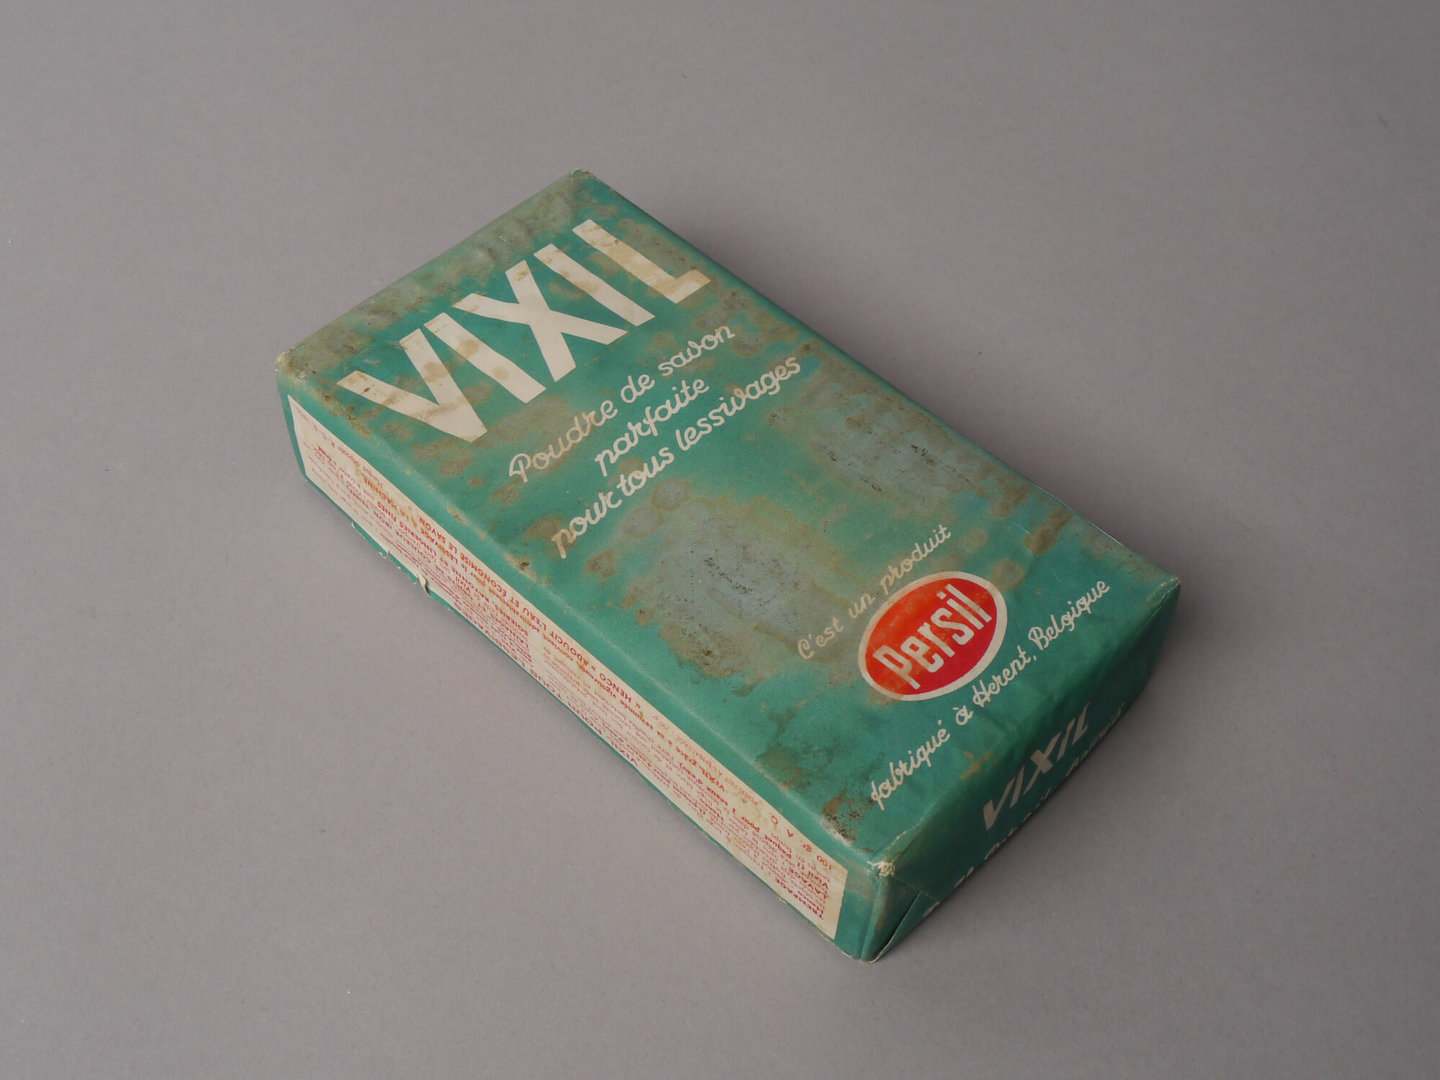 Verpakking met waspoeder van het merk Vixil